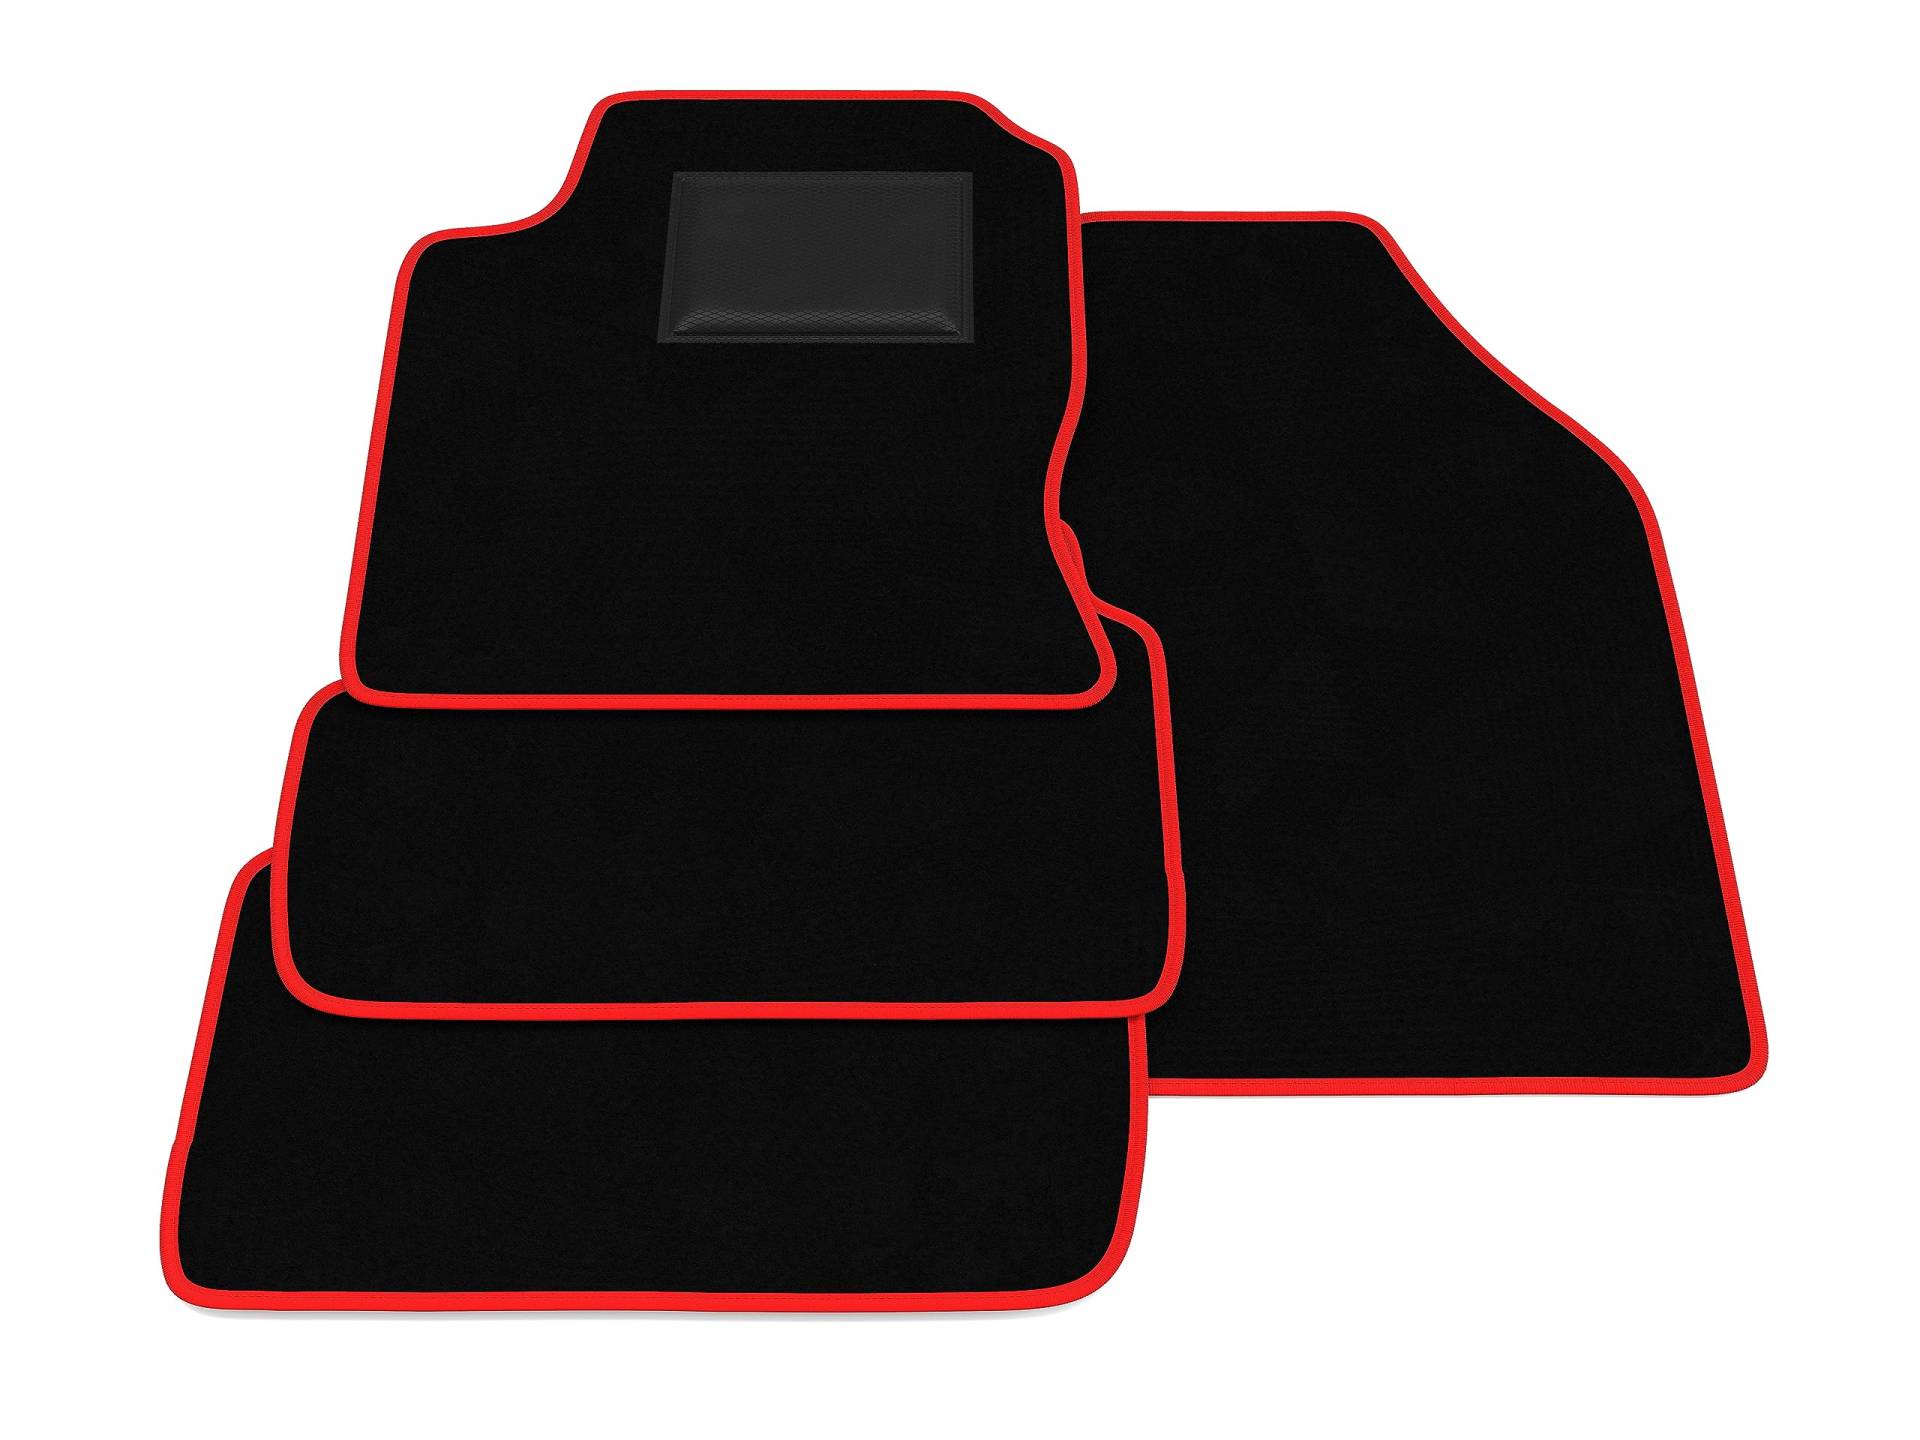 Fußmatten kompatibel mit Ford Focus 2001-2004, rote Umrandung, Autofußmatten-Kit, Samtteppich-Set, Autoteppich von GENERISCH